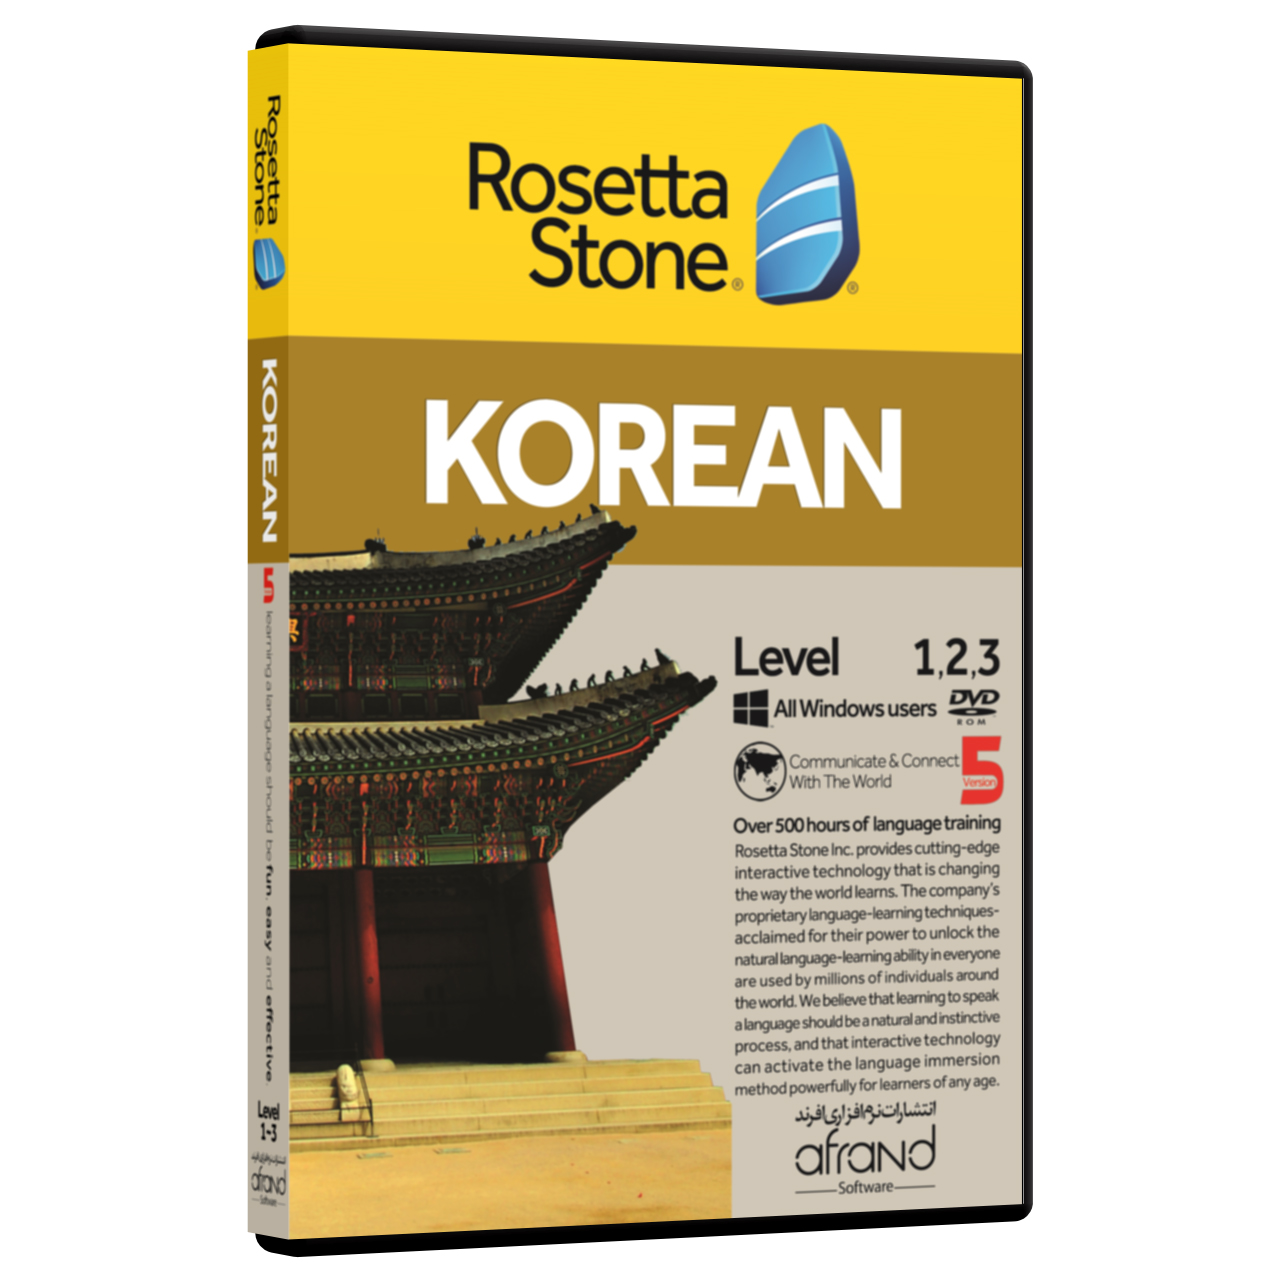 نرم افزار آموزش زبان کره ای رزتااستون نسخه 5 انتشارات نرم افزاری افرند